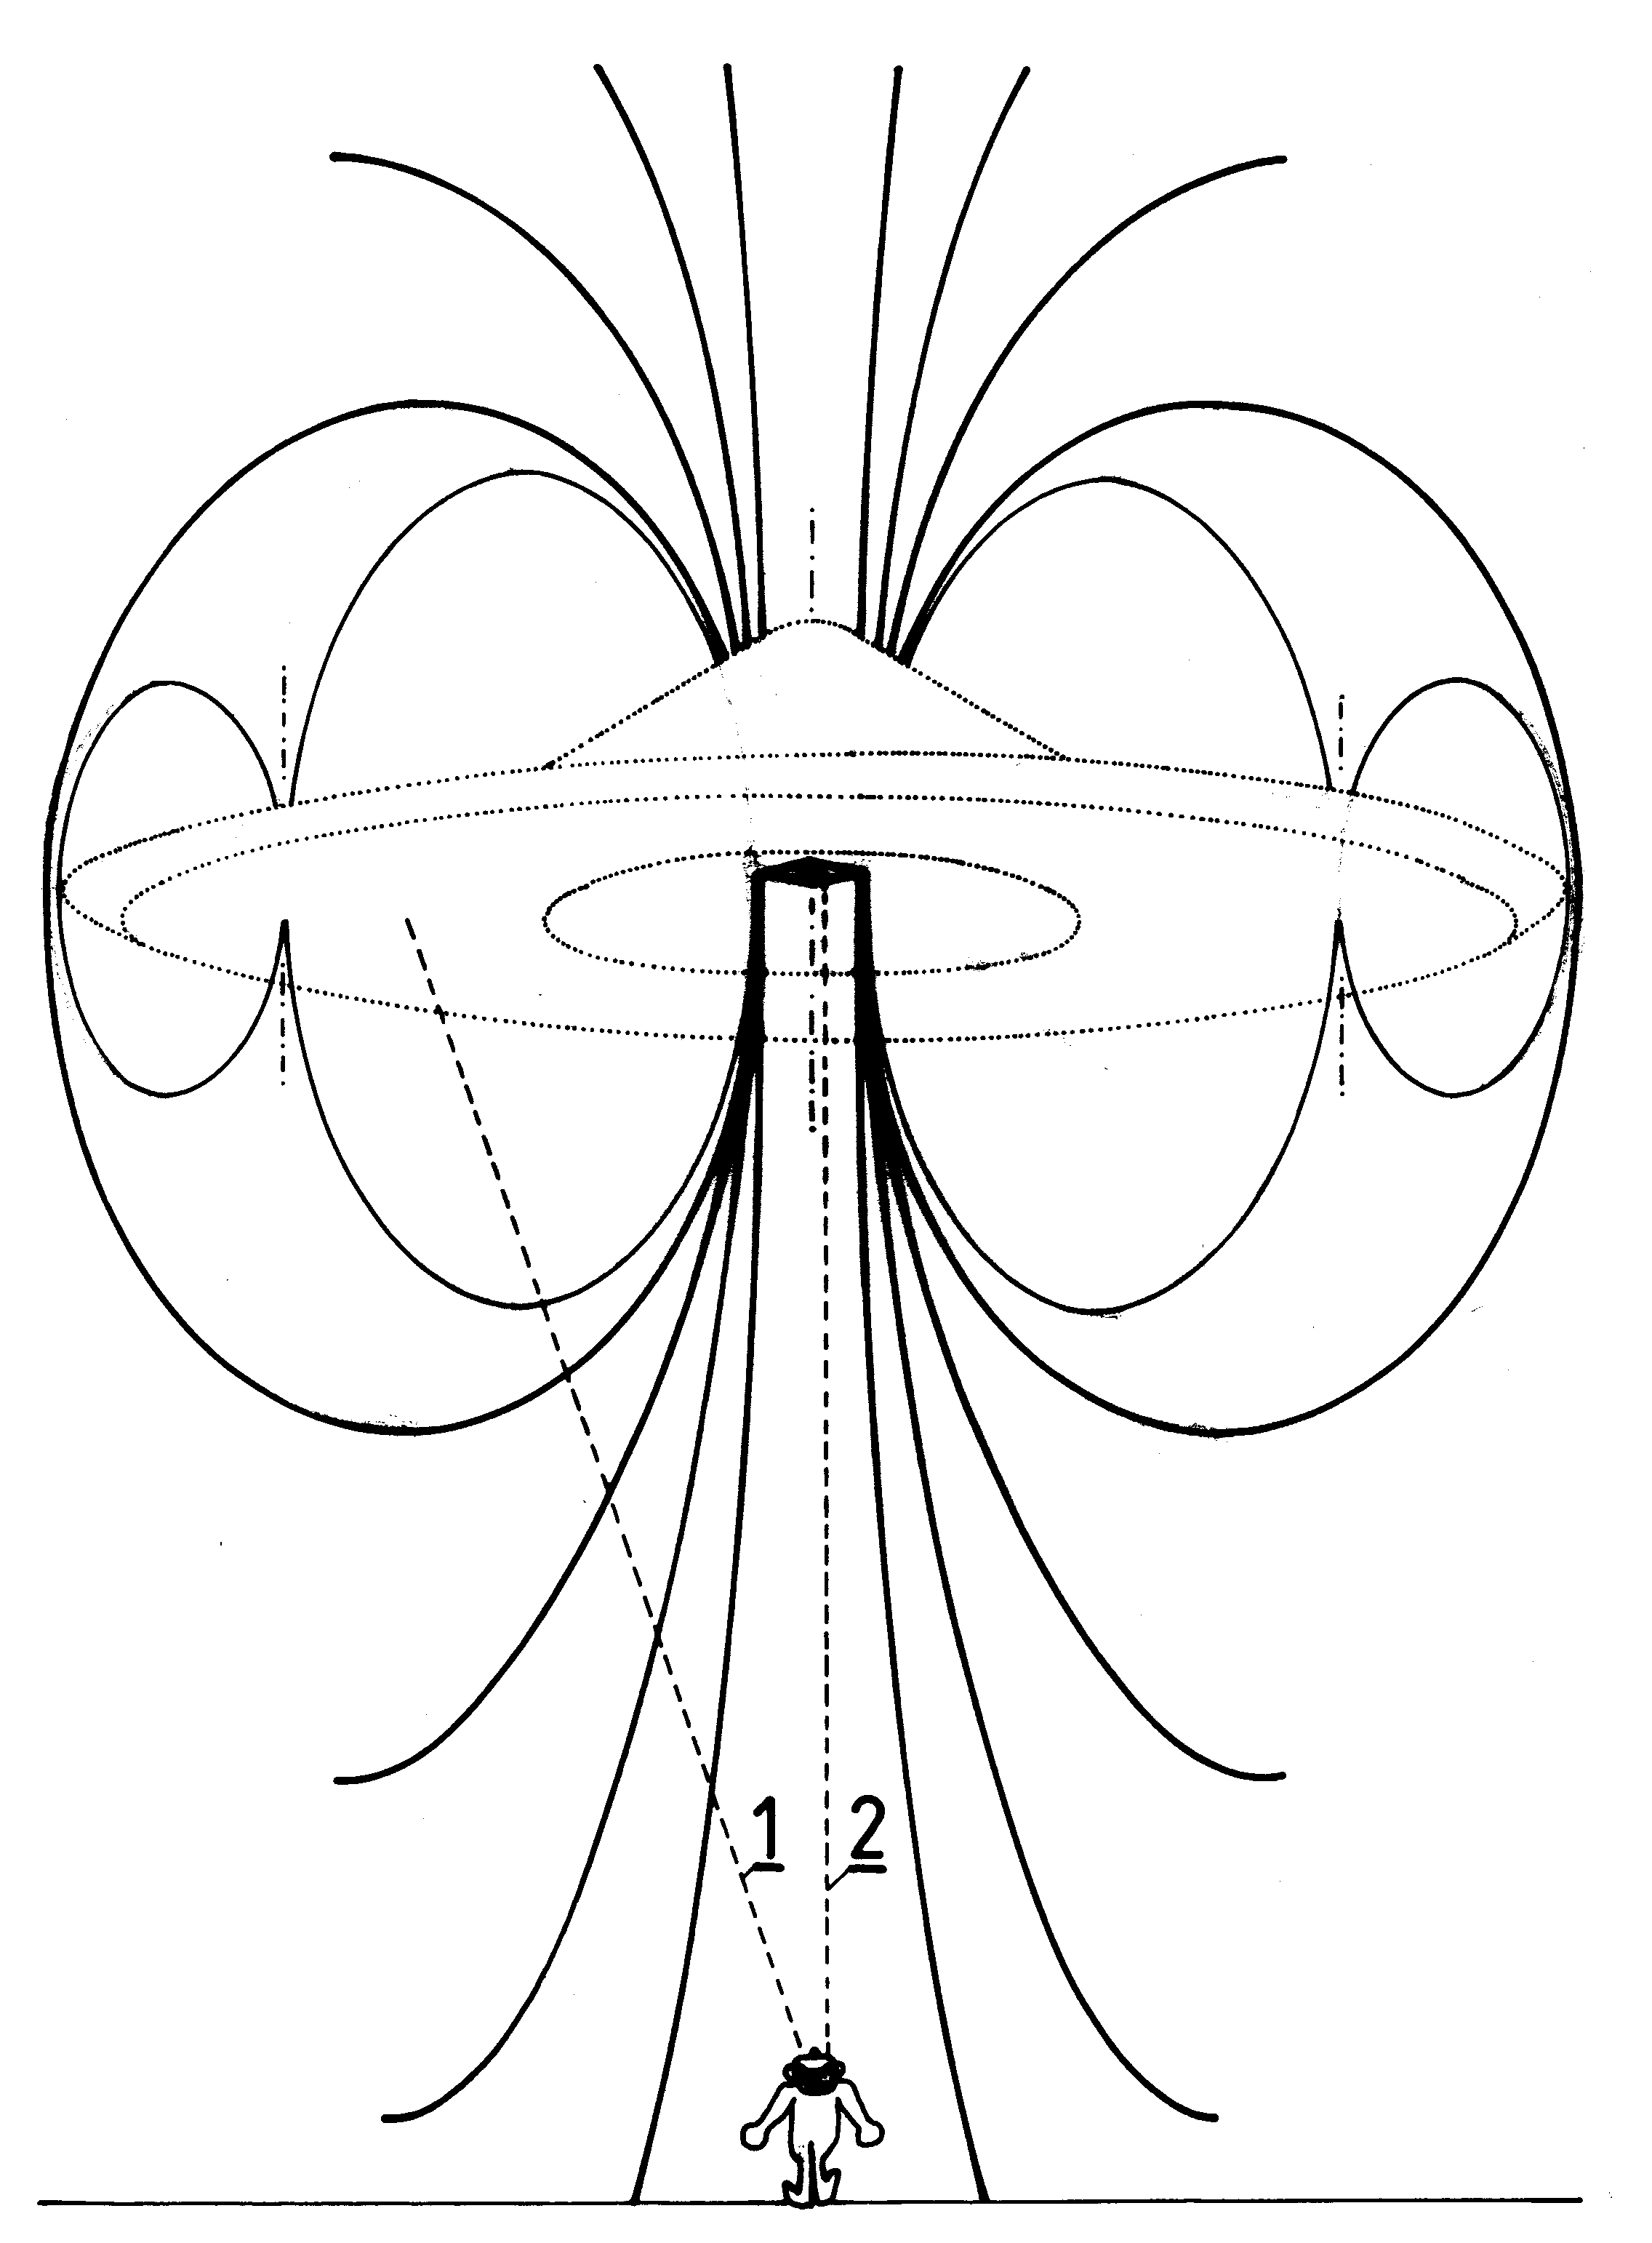 Fig. G37